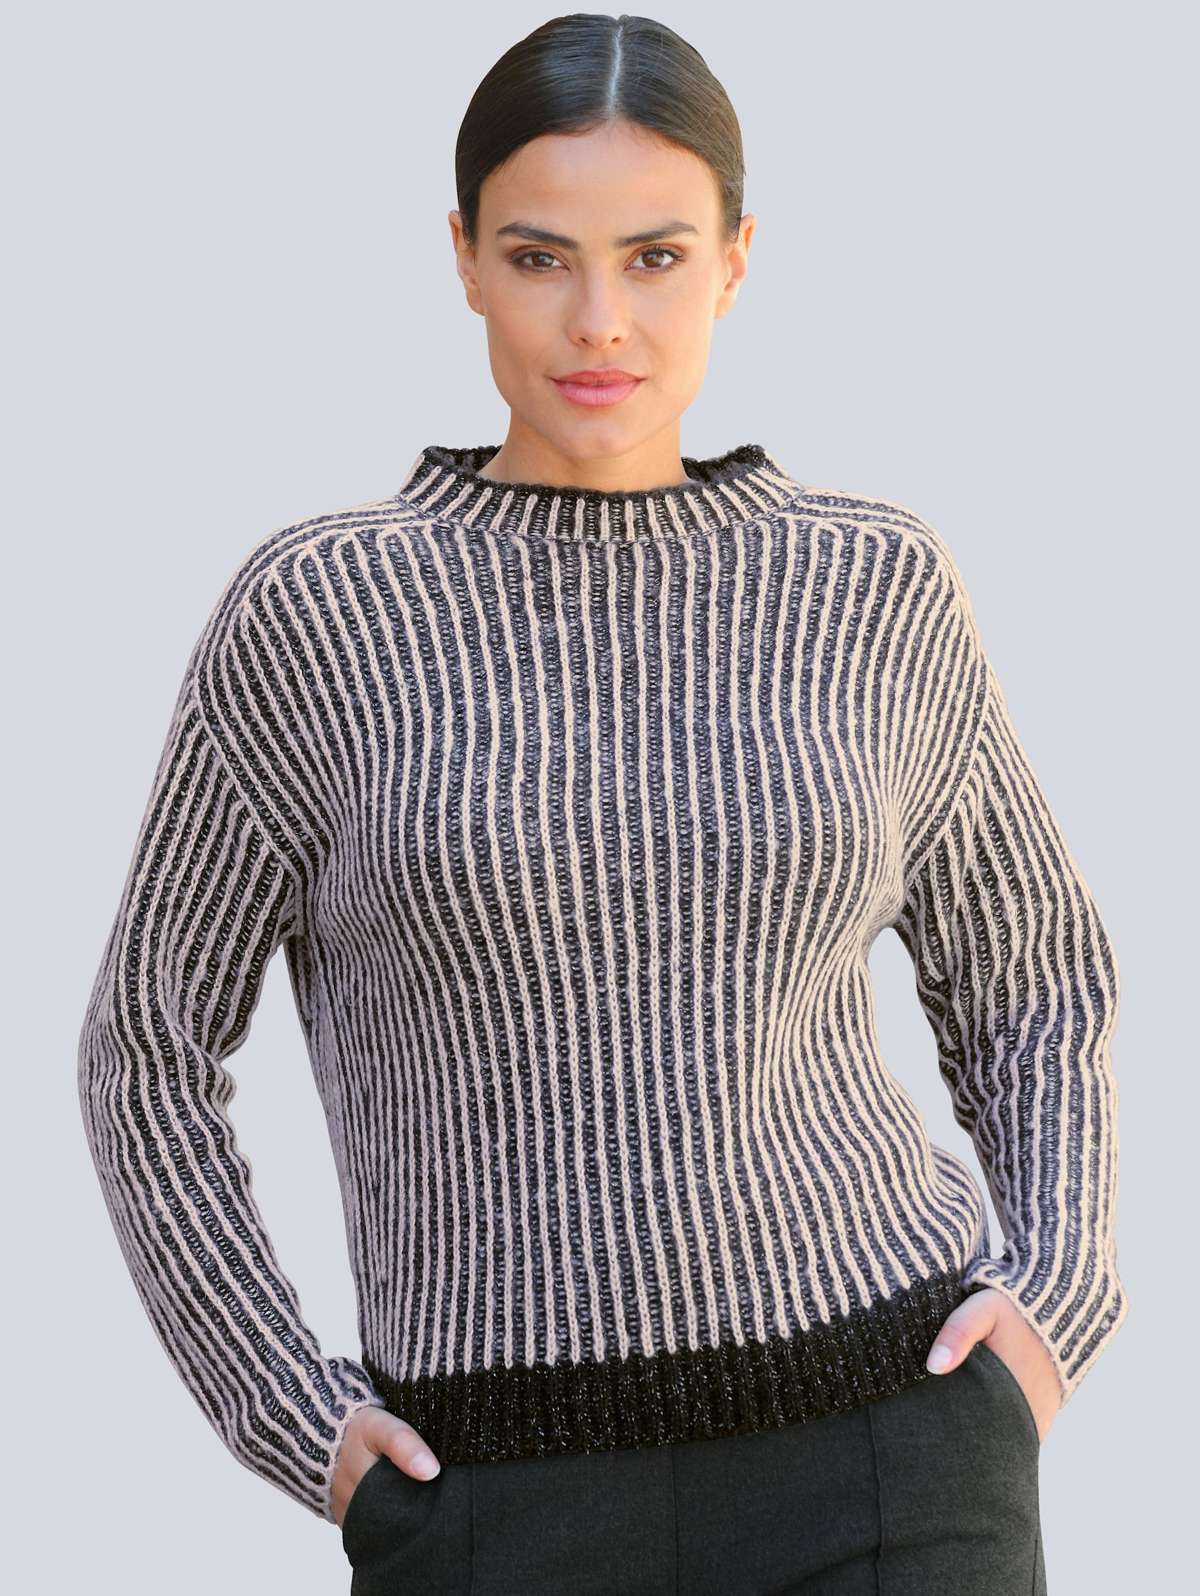 Вязаный свитер из флиса в модном полосатом исполнении.